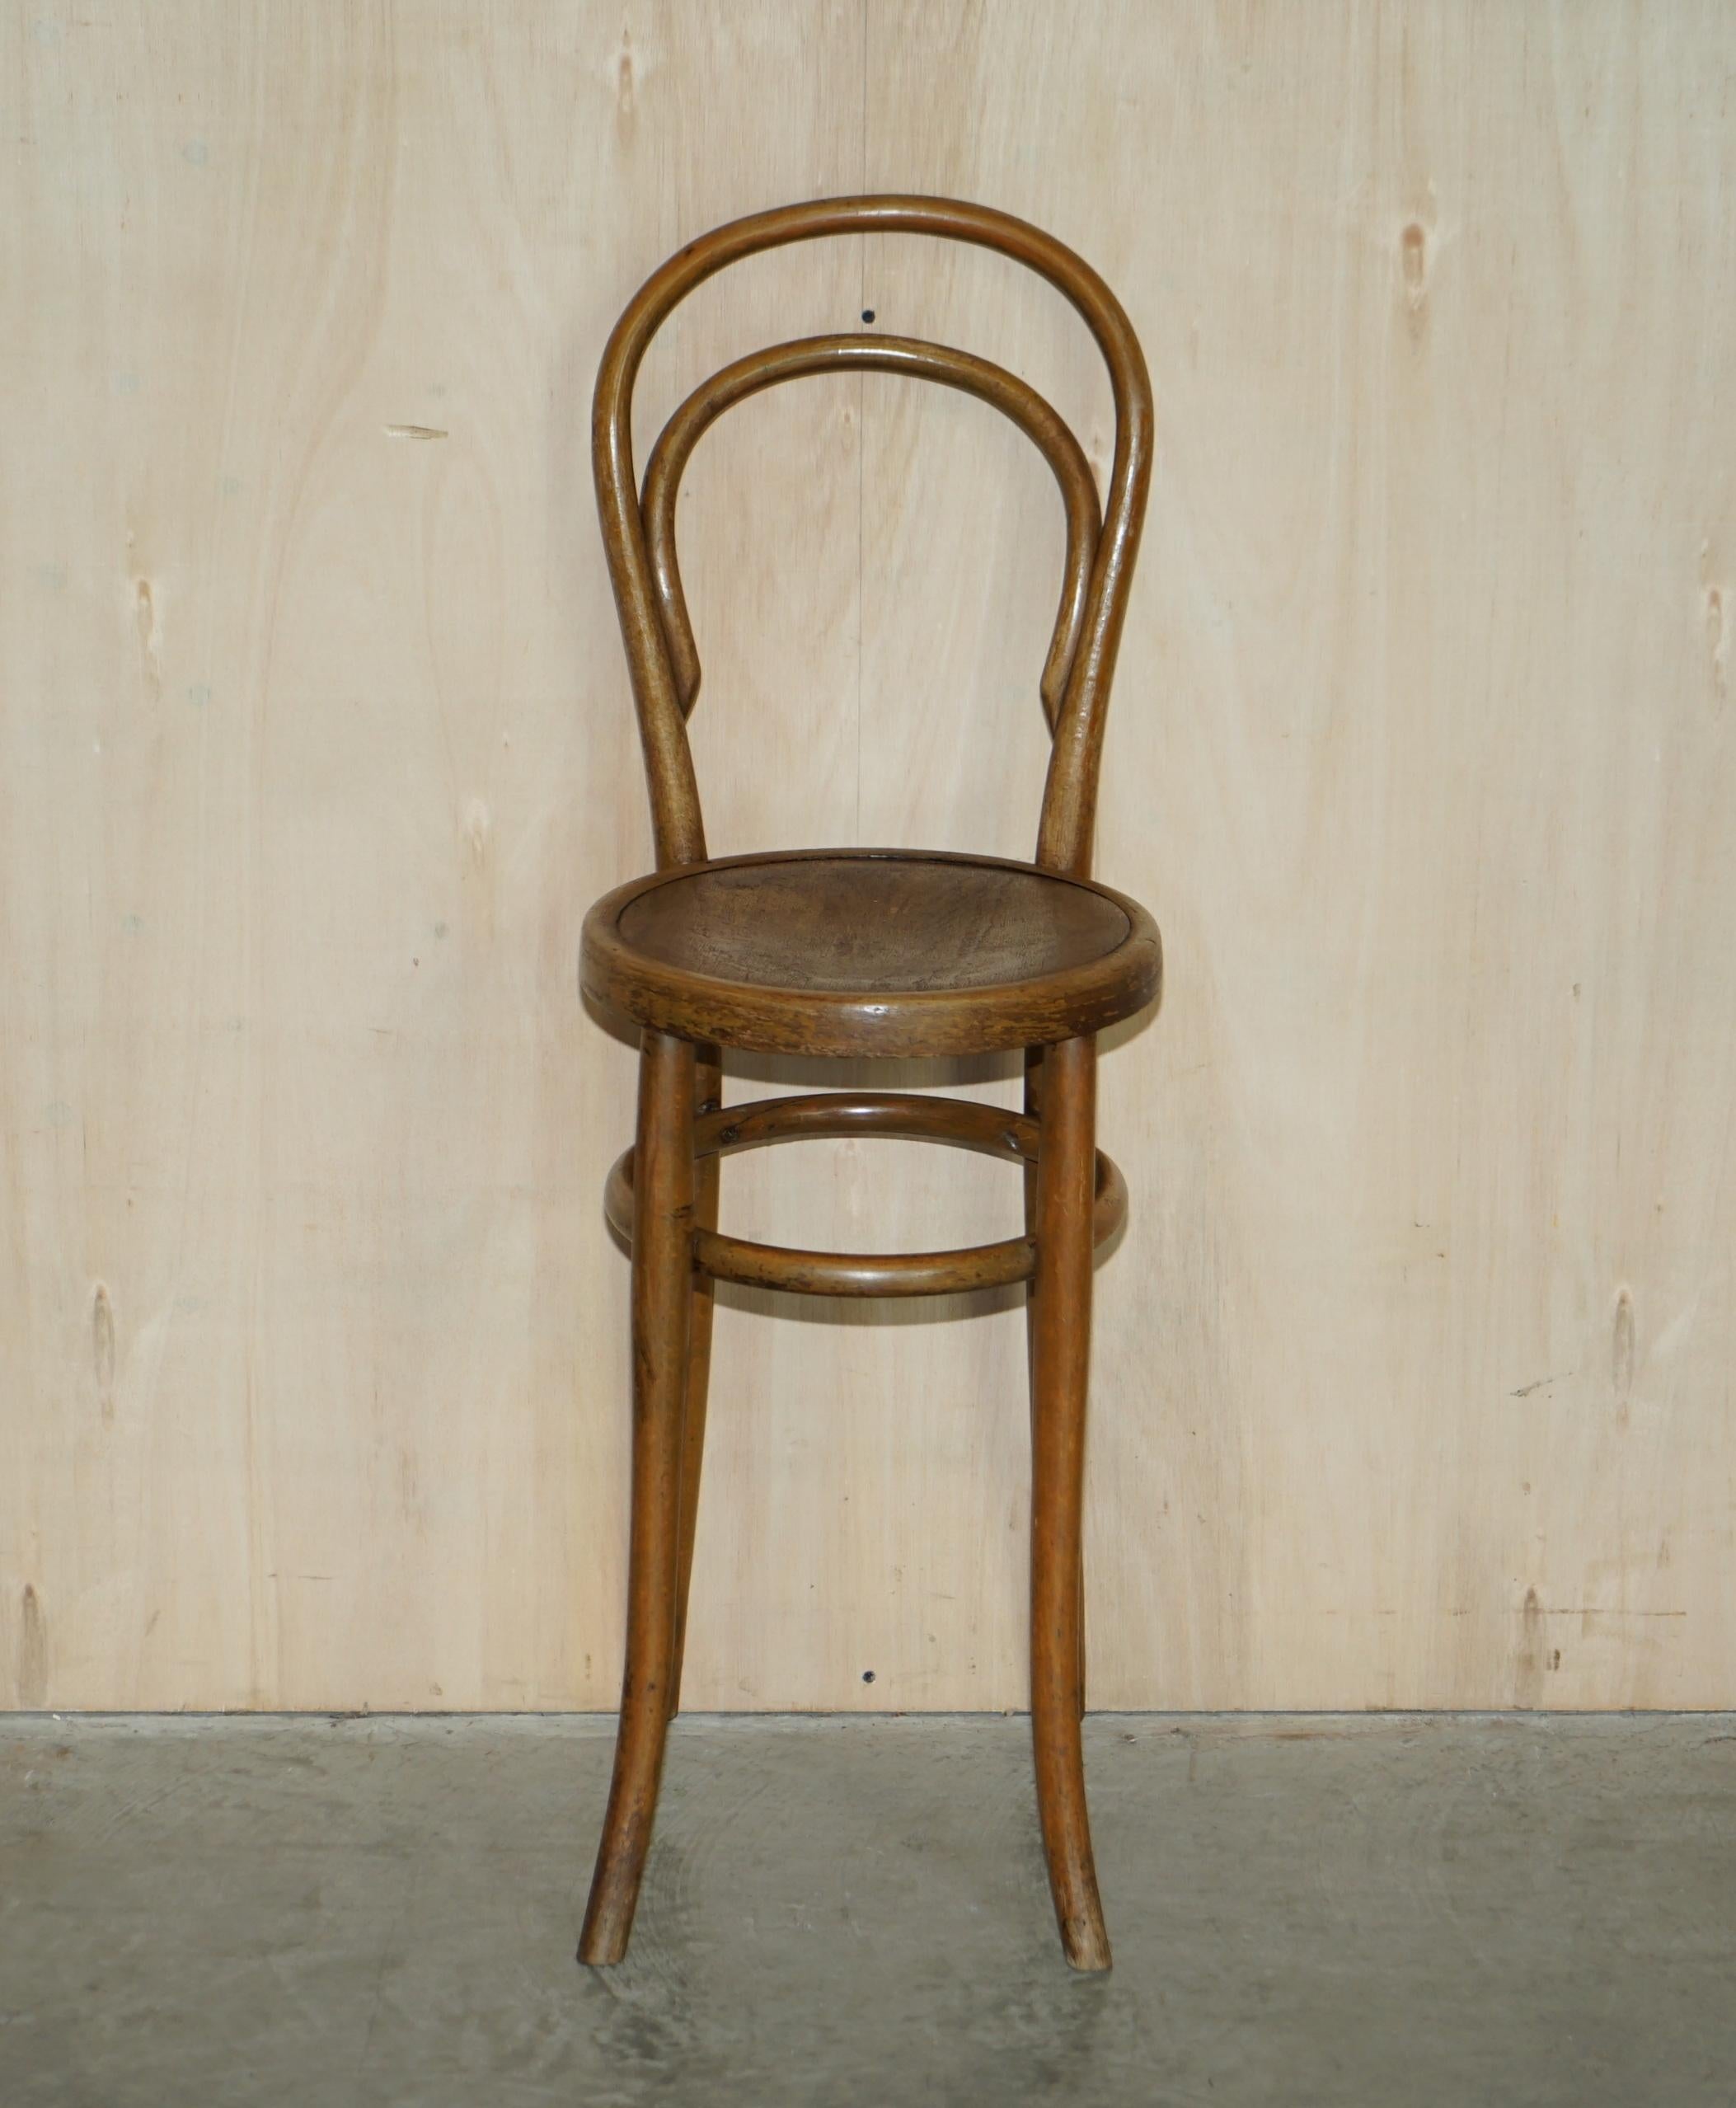 3 Original circa 1920 Mundus Vienna Austria Bentwood High Back Kitchen Chairs For Sale 1